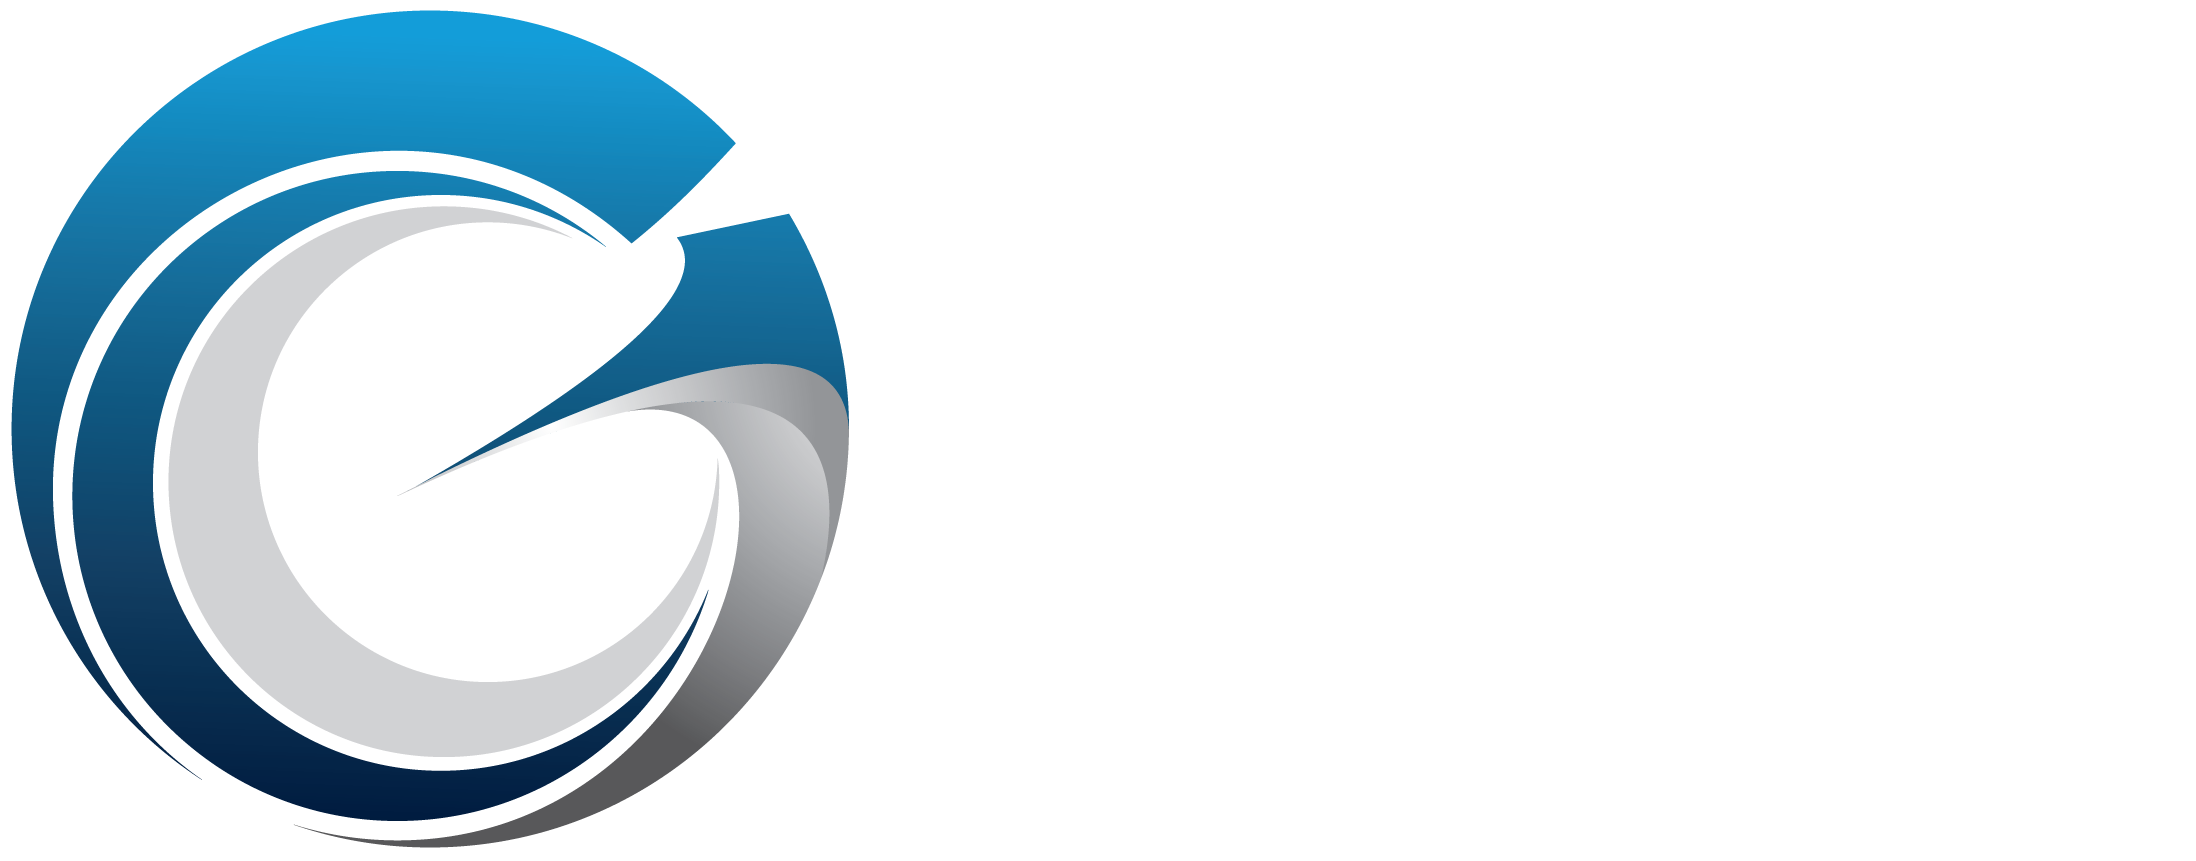 Group-Elite-logo-2020-upper left web